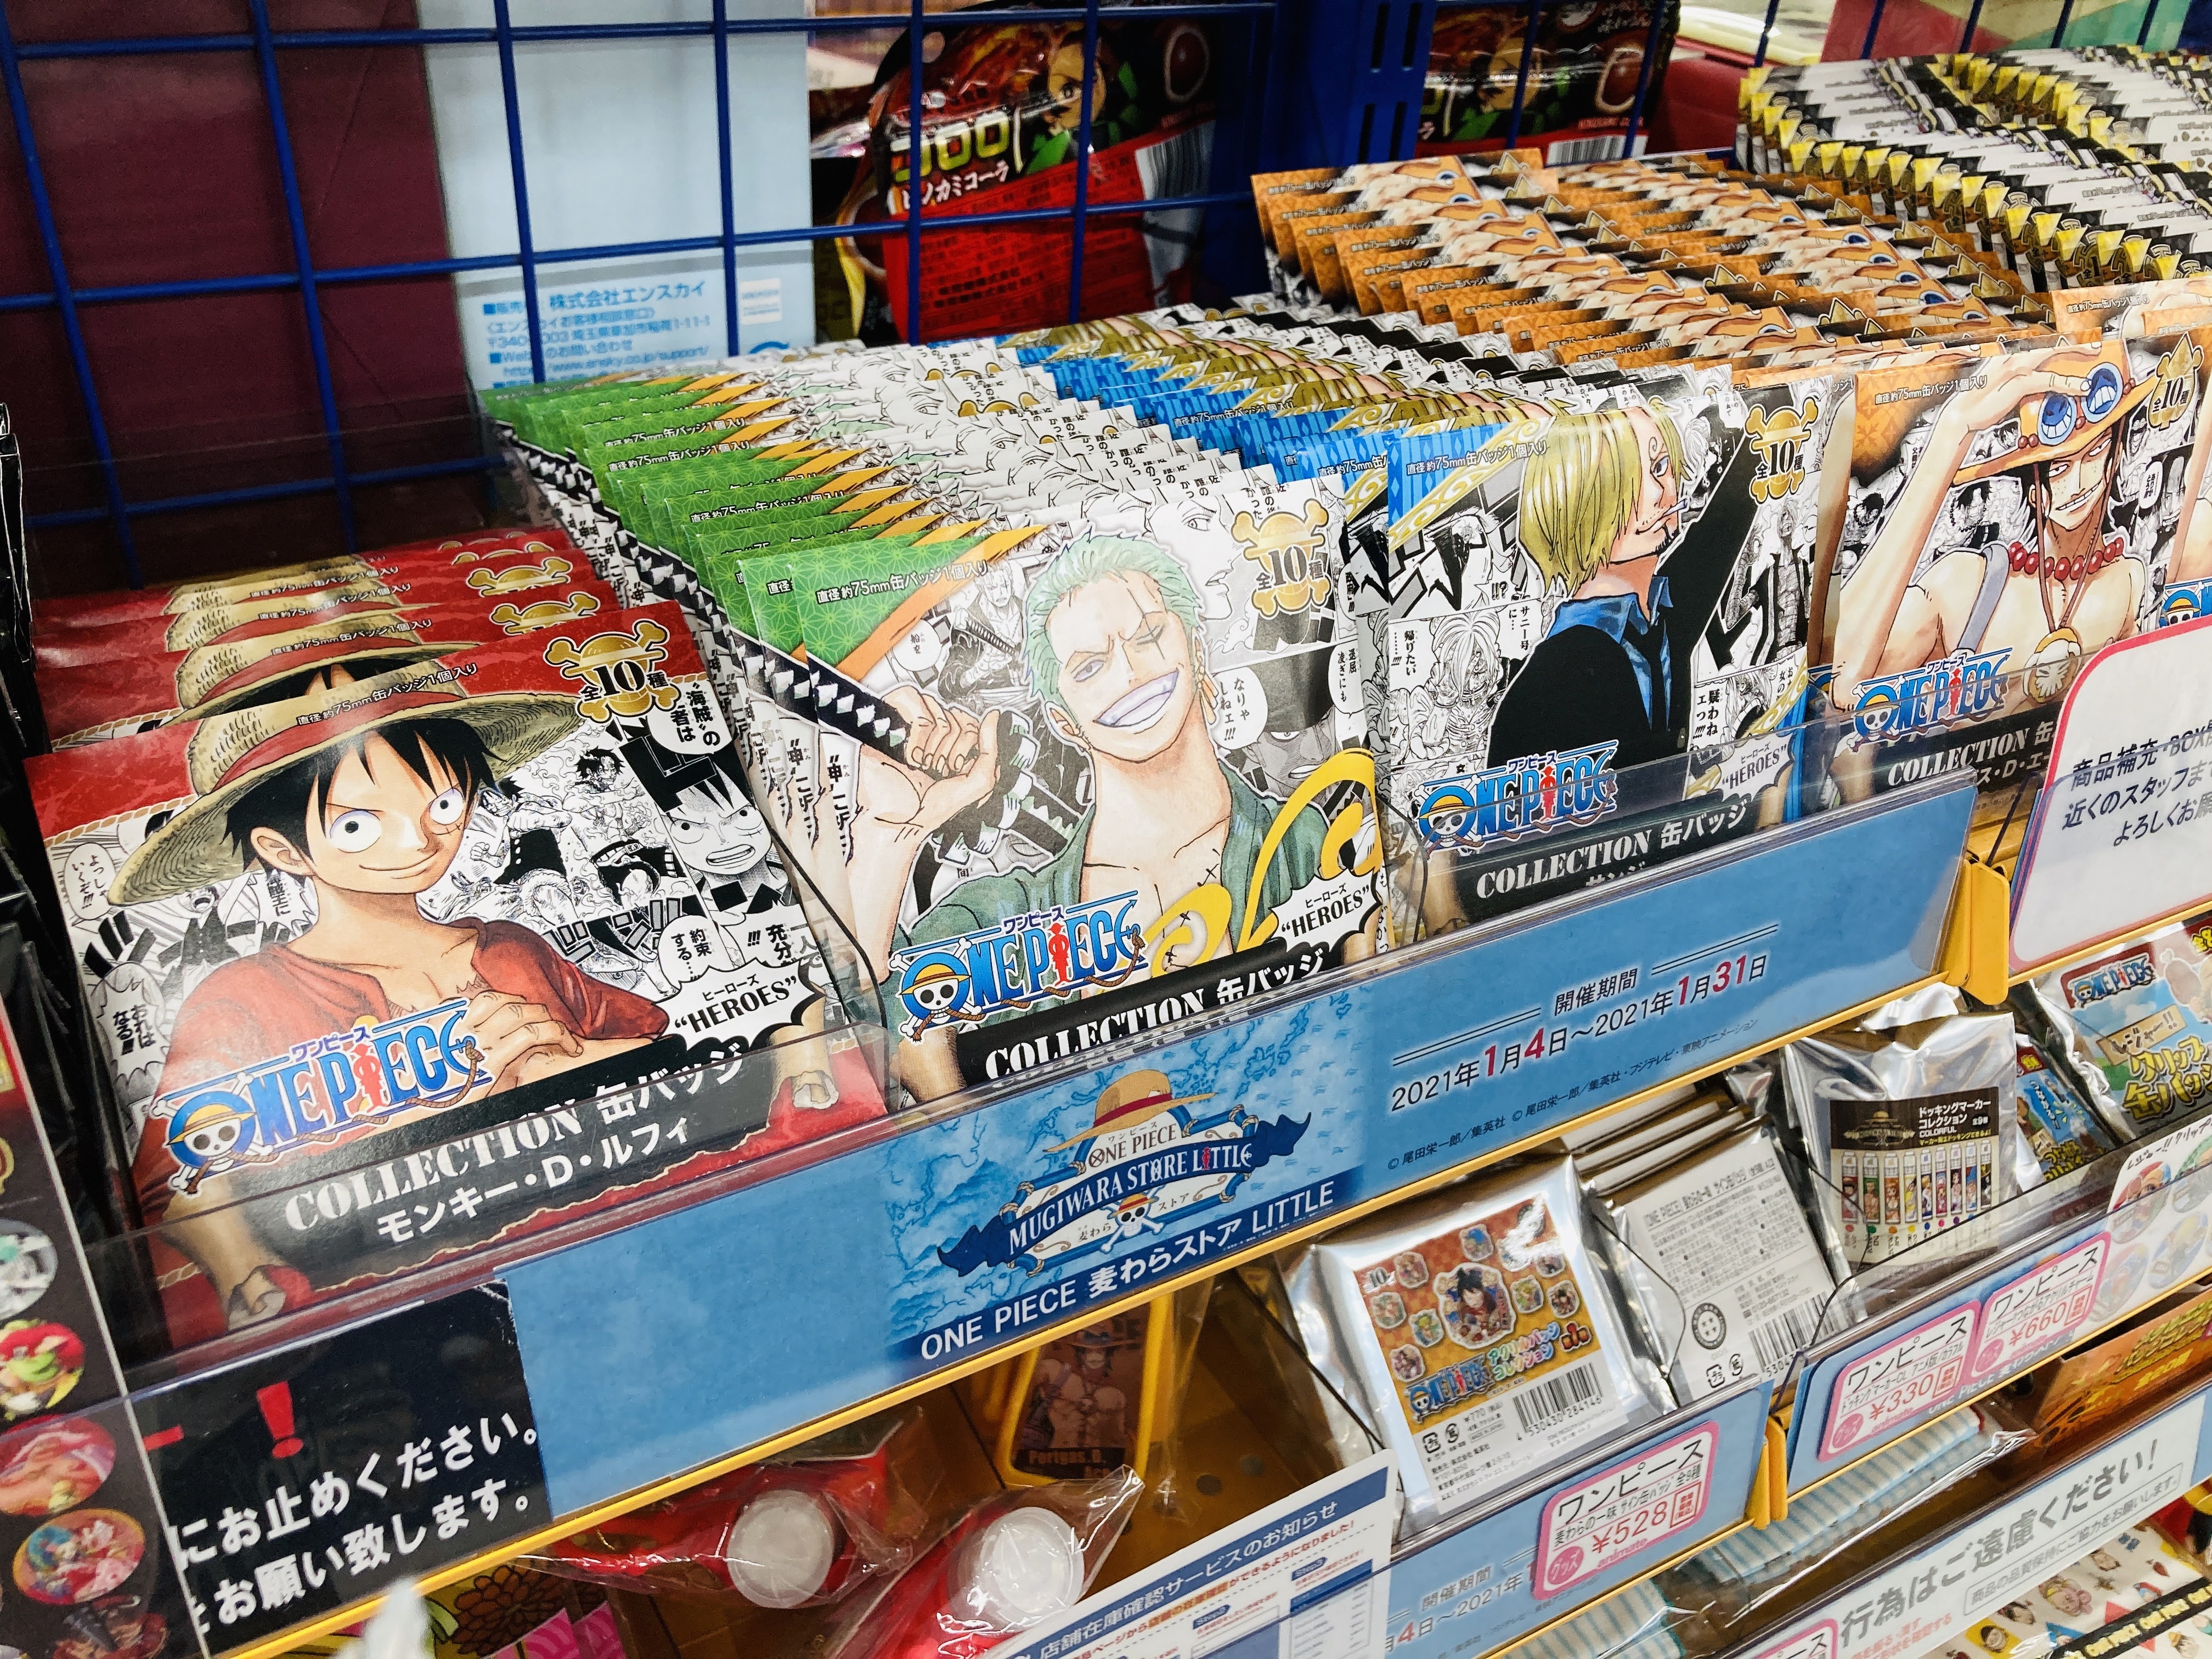 アニメイト仙台 通常通り営業中 One Piece 麦わらストア出張店 Little 仙台店にも来たみや っ 対象商品1000円以上ご購入で 1000話記念ブロマイド 全1種 さらに 中学生以下のお客様には レジャーシート を追加で